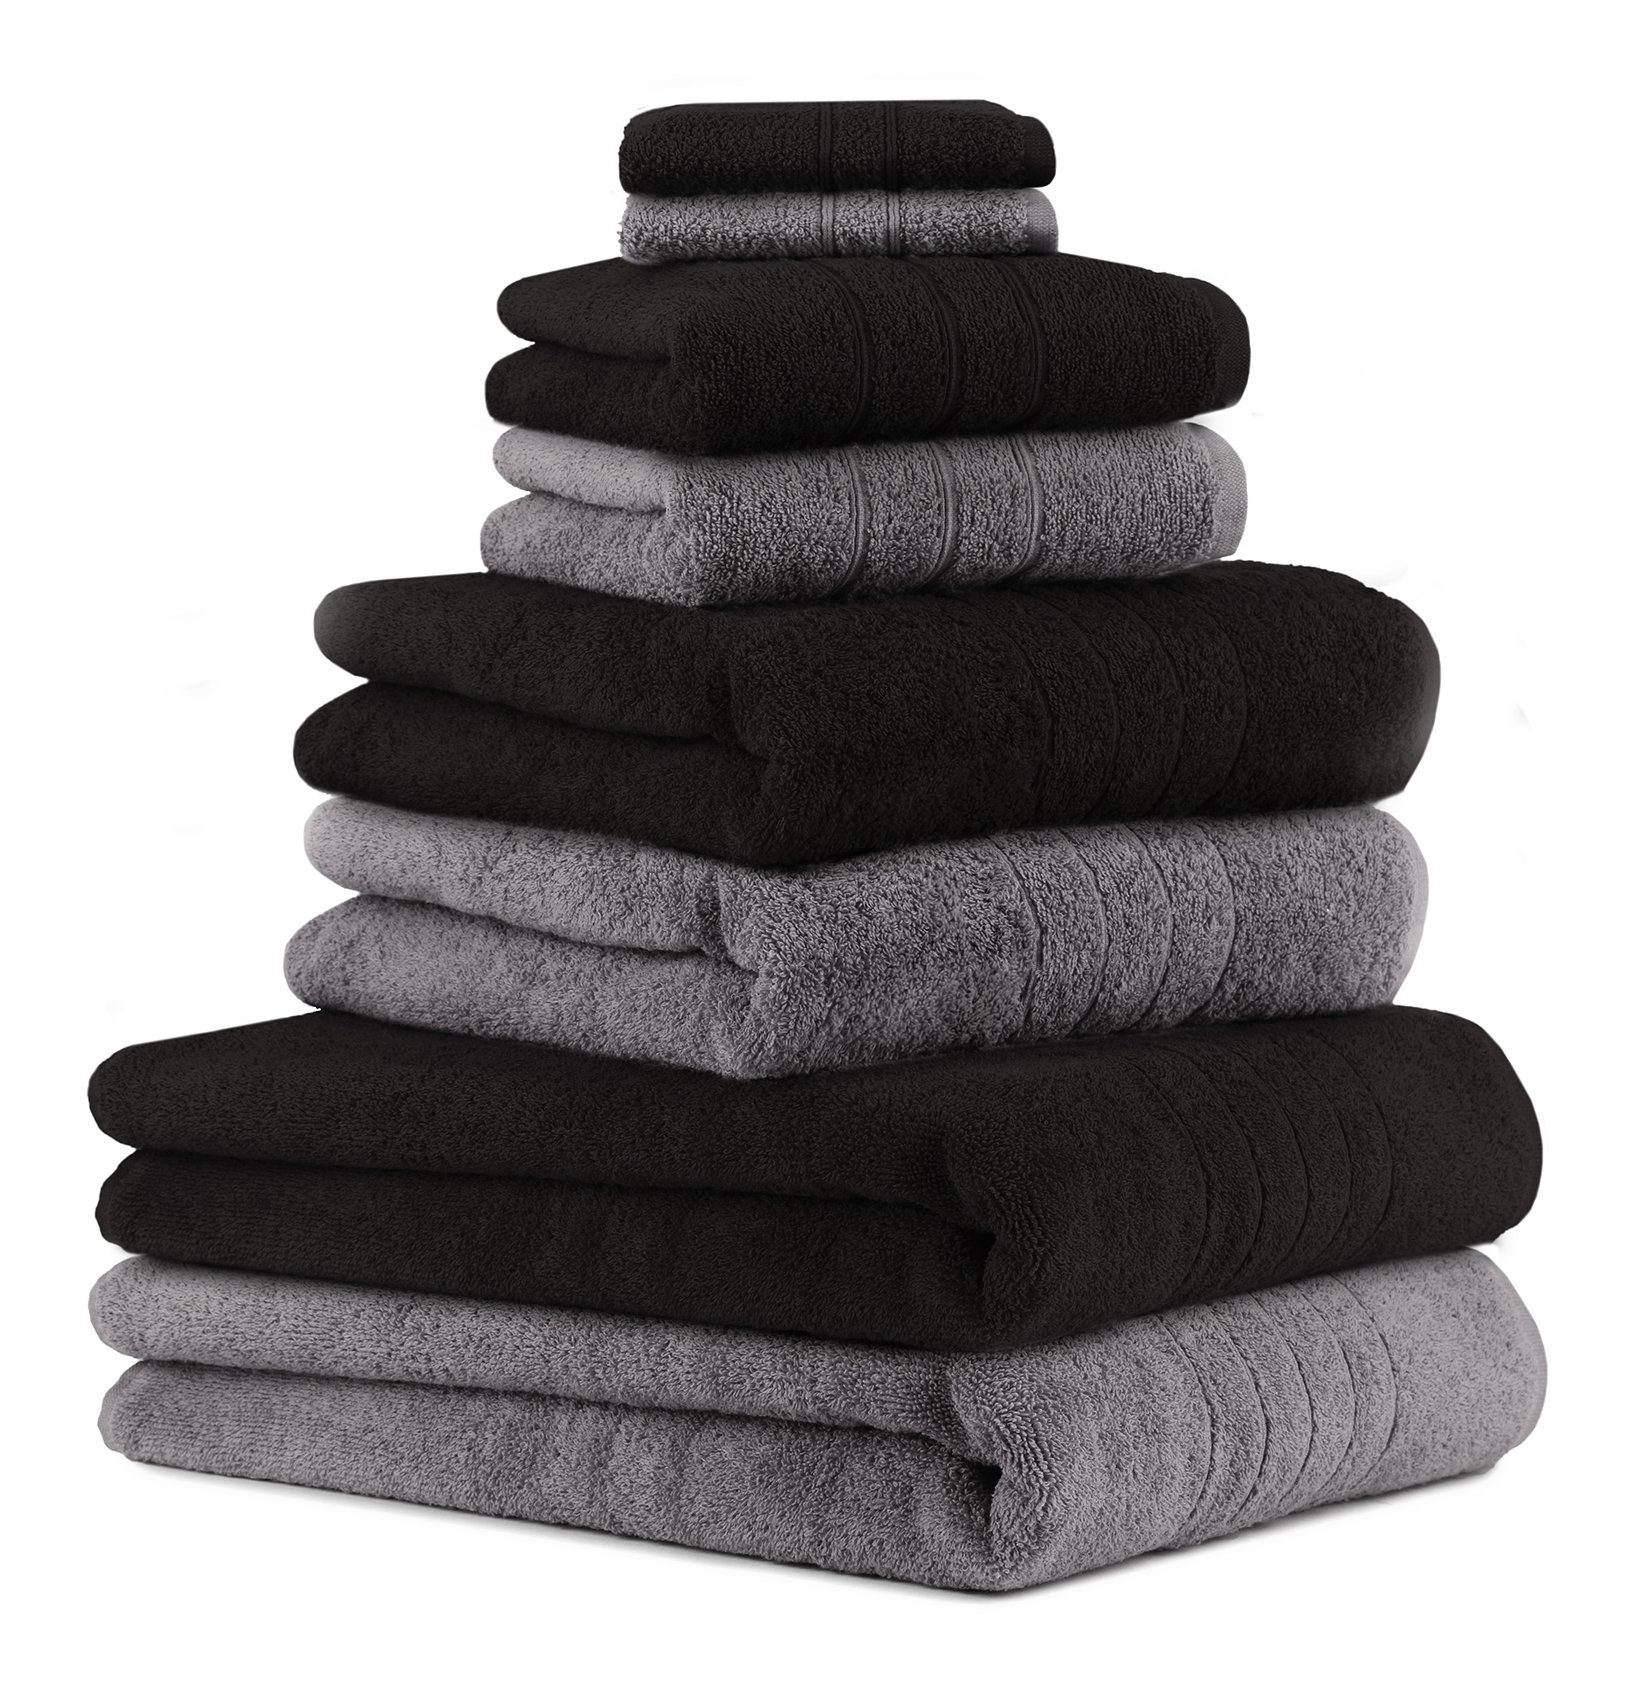 und Handtücher Seiftücher 2 Handtuch-Set 2 Farbe 100% schwarz, anthrazit Set (8-tlg) grau Baumwolle Badetücher Betz Duschtücher Baumwolle, 8-TLG. Deluxe Handtuch 2 2 100%